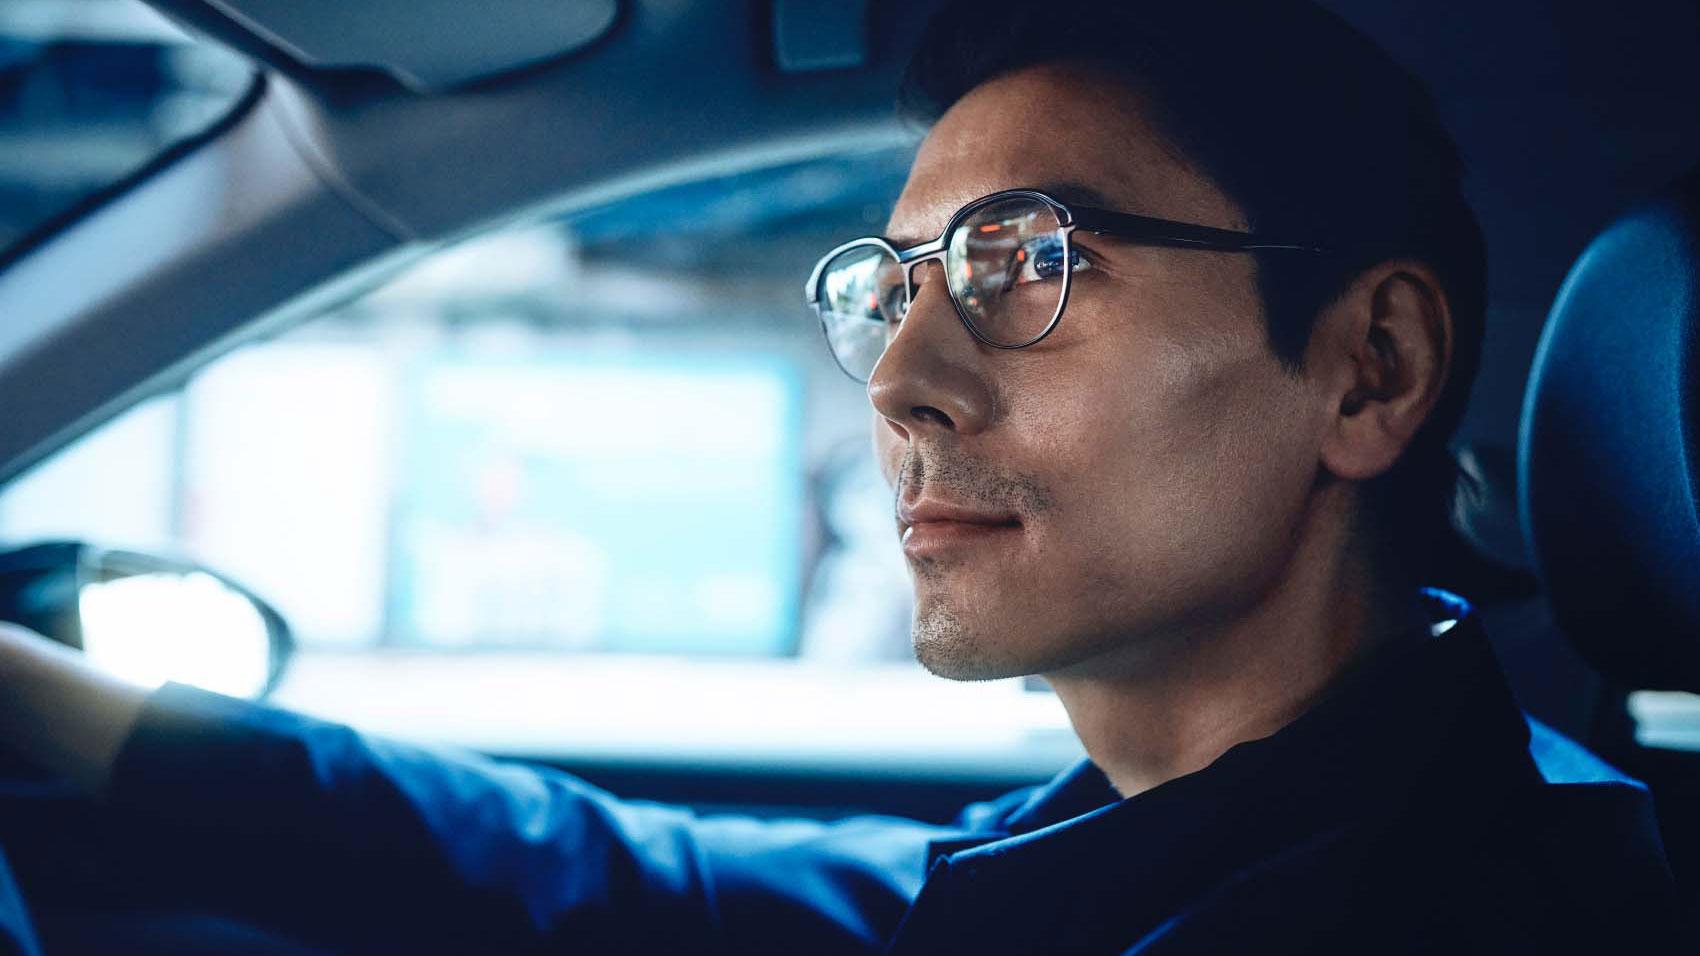 De beste brillenglazen voor autorijden - veilig aankomen op de plaats van bestemming